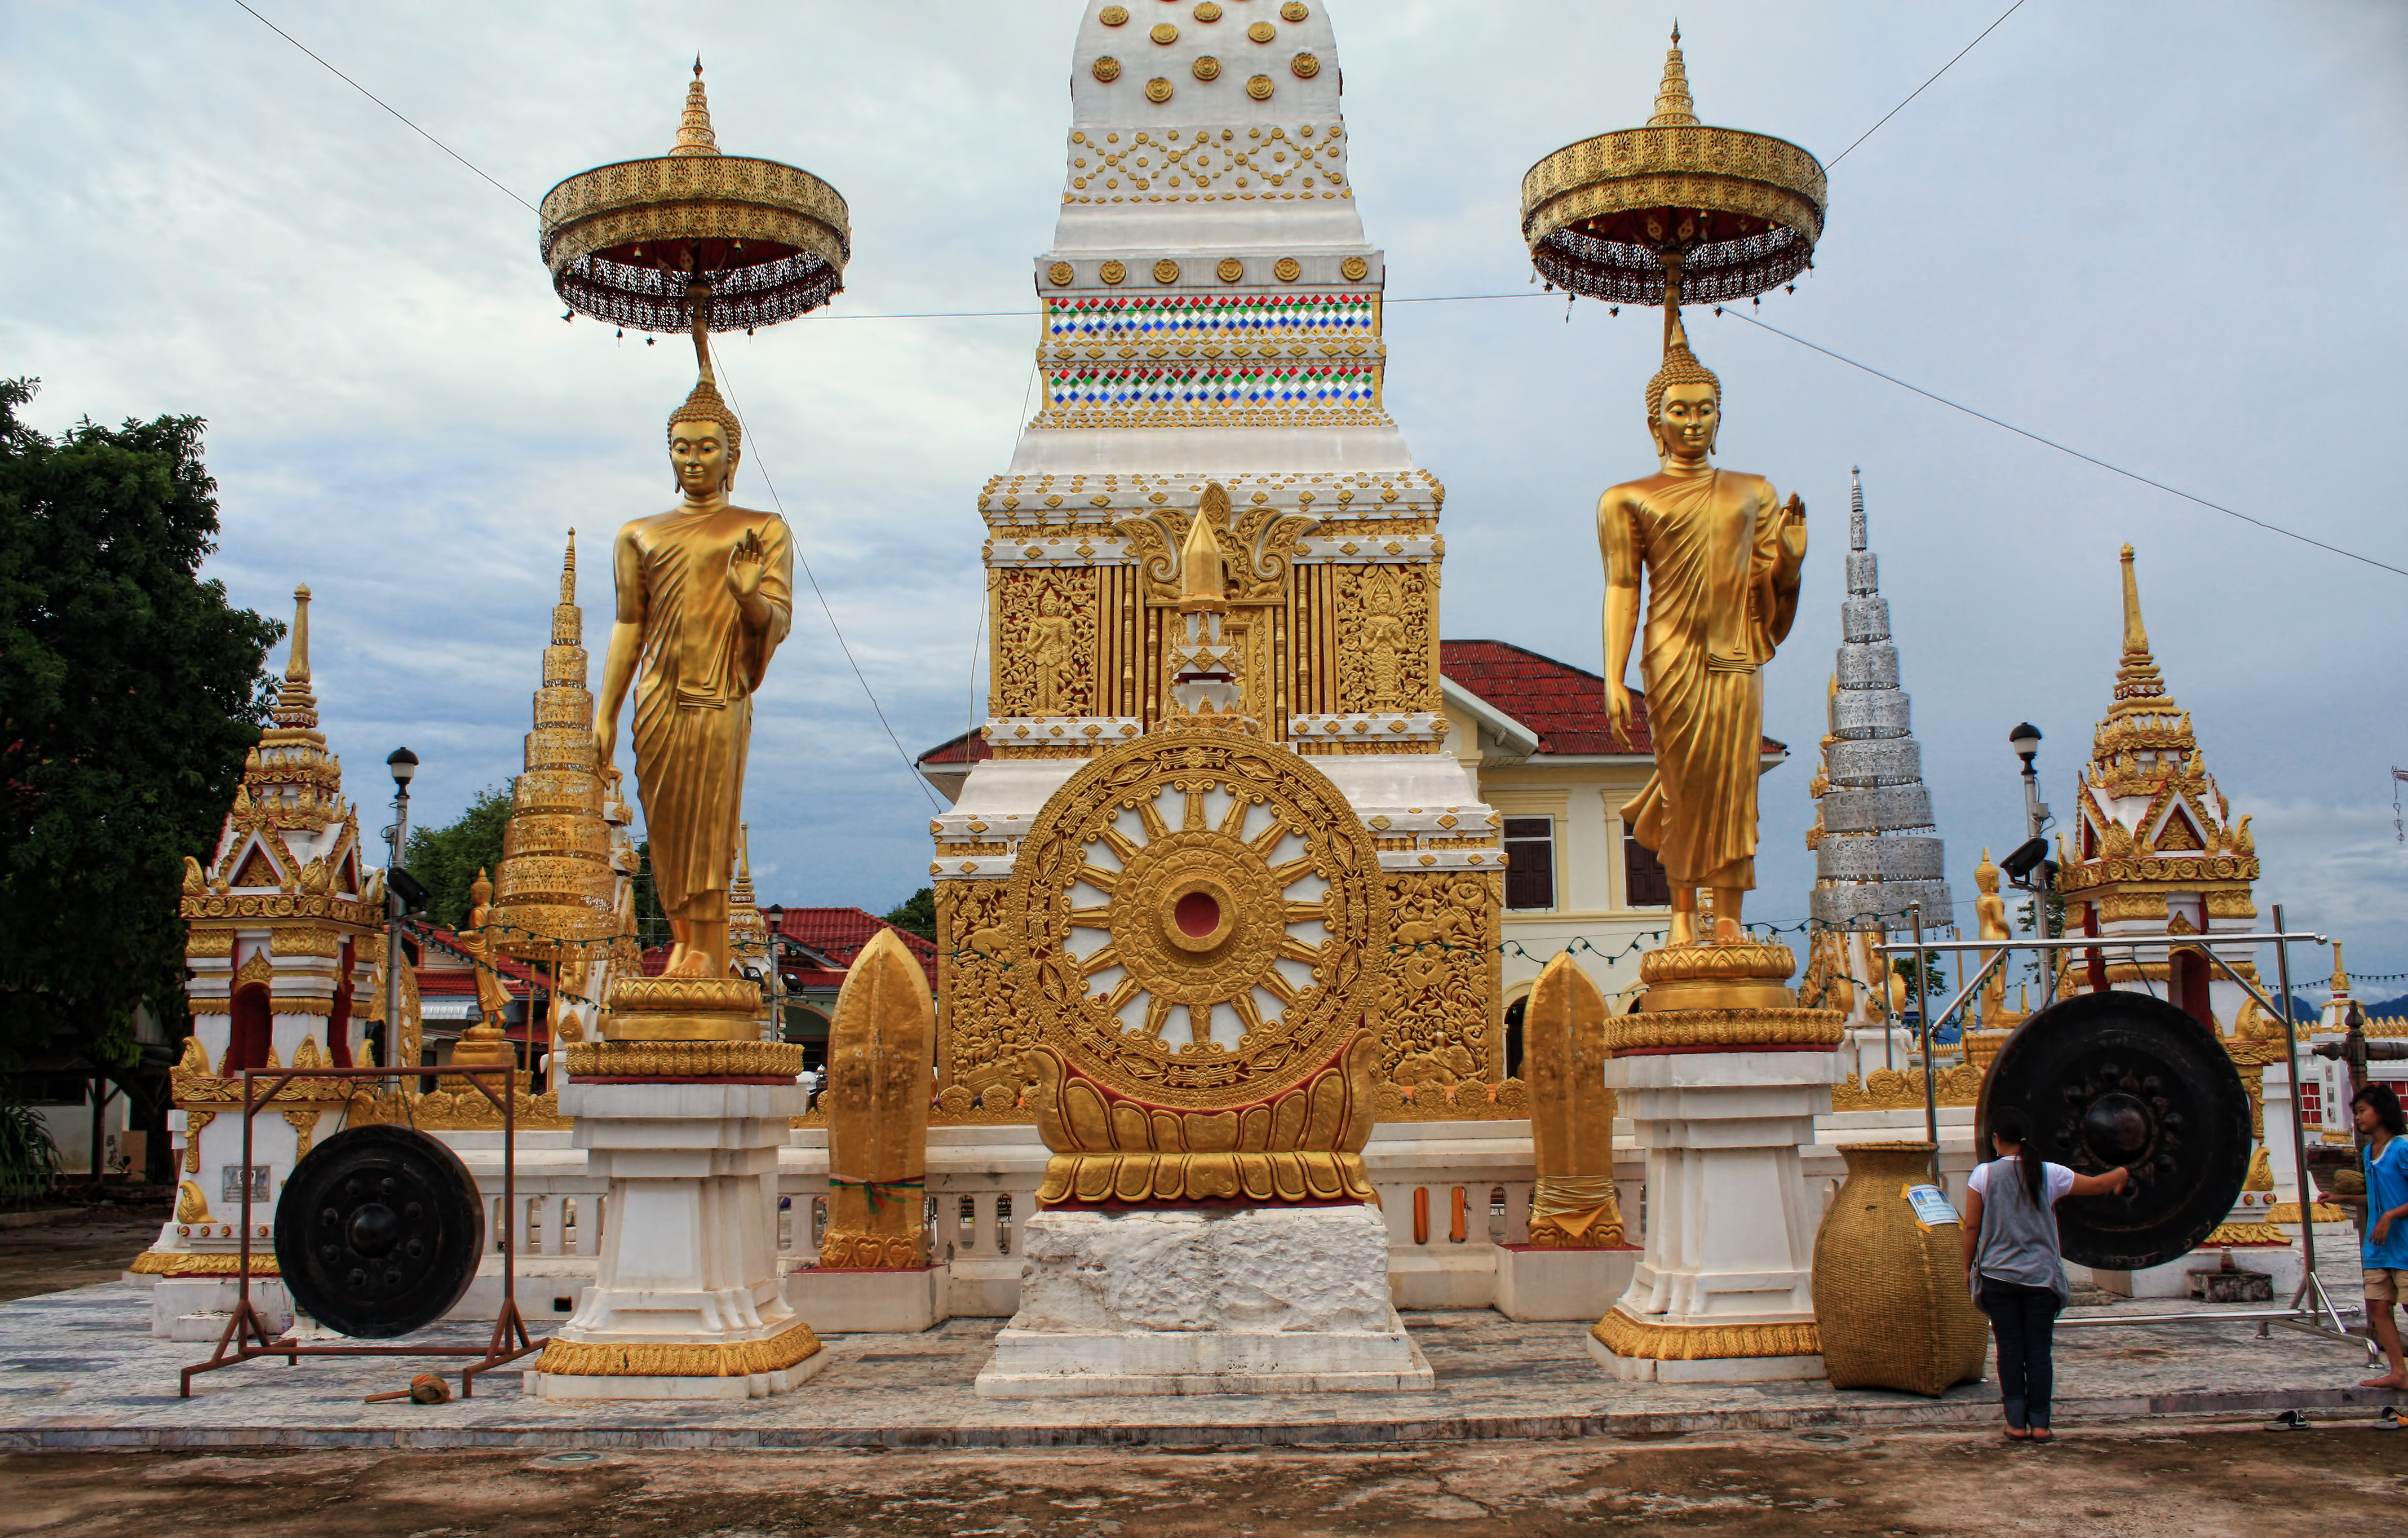 Du lịch Lào – Thái Lan – Campuchia 7 ngày 6 đêm. Hành trình du lịch đường bộ